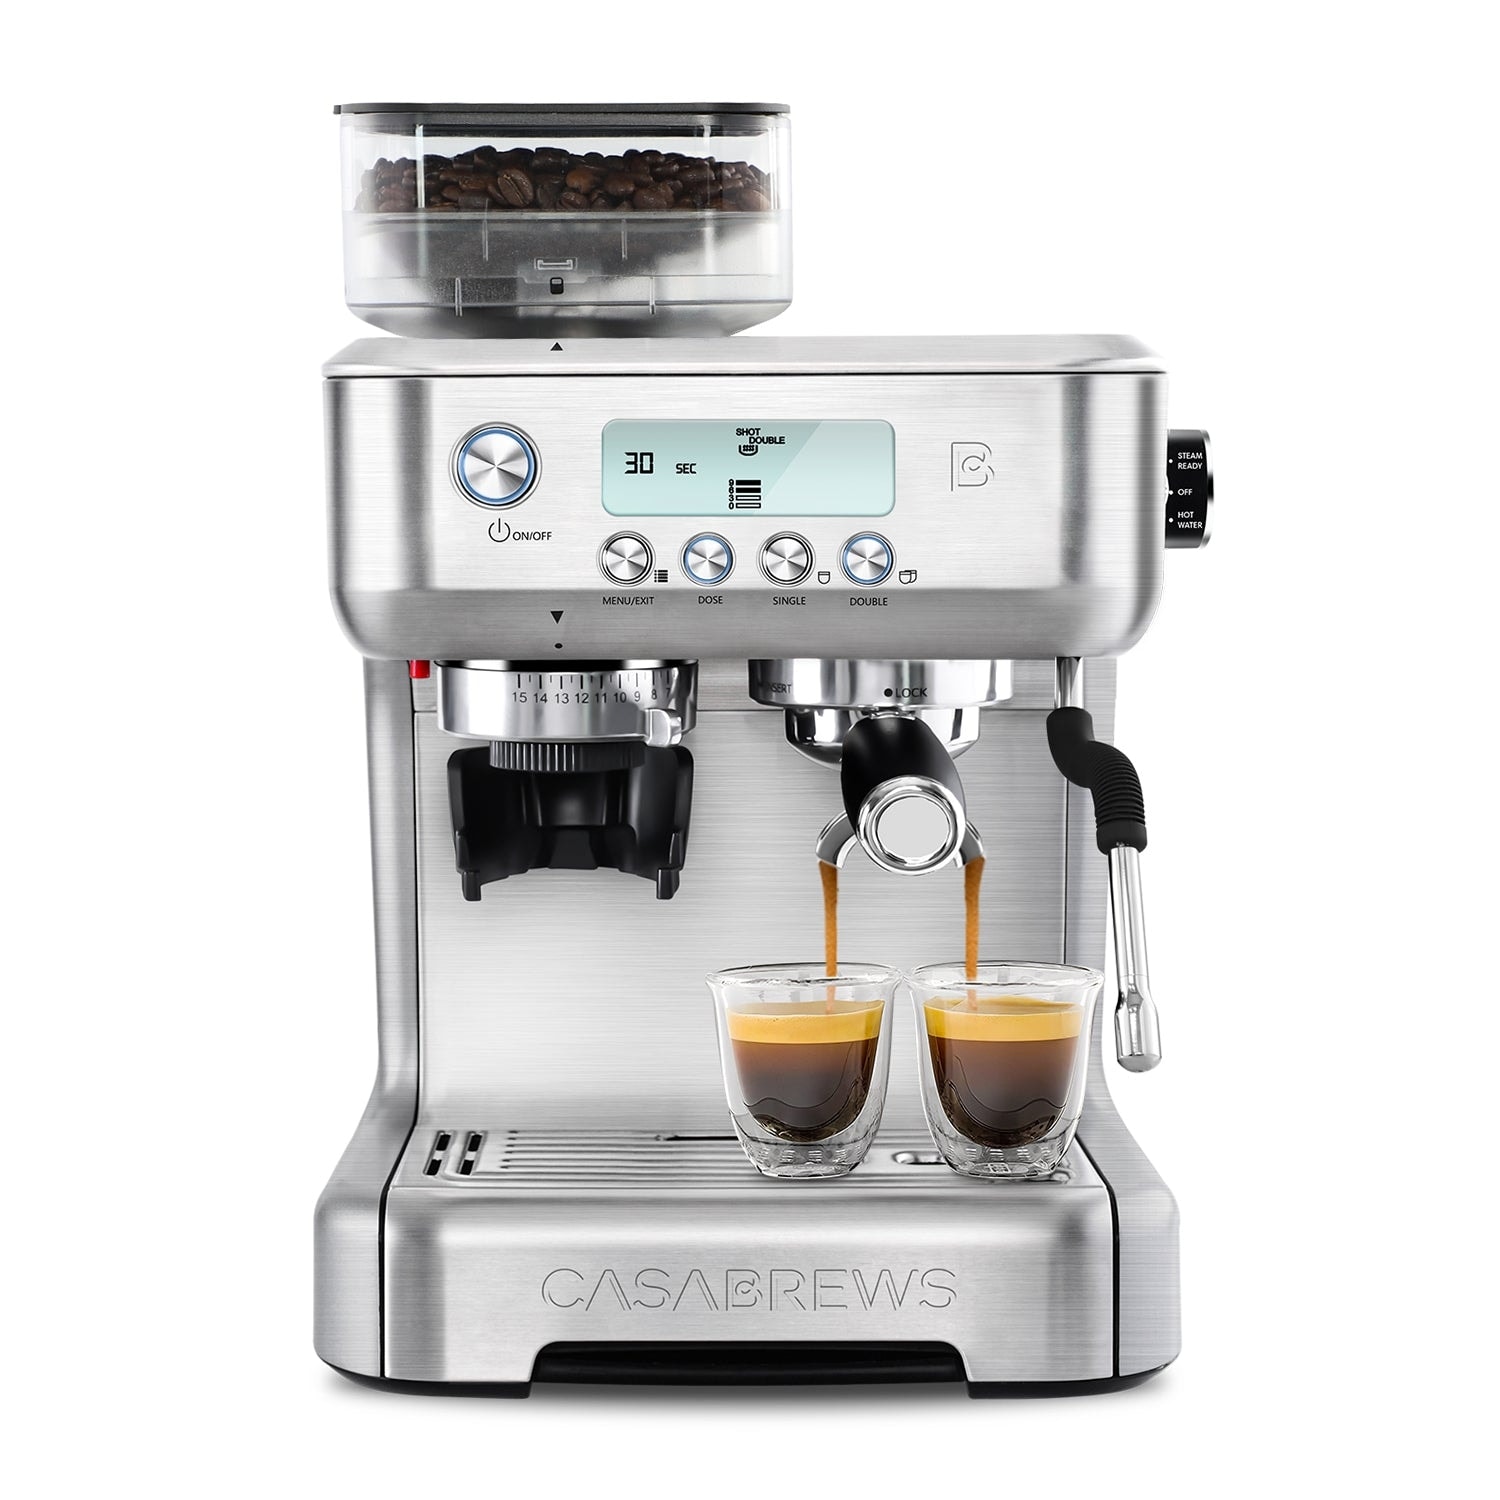 ChefWave Mini Espresso Machine for Nespresso Capsules with Accessories